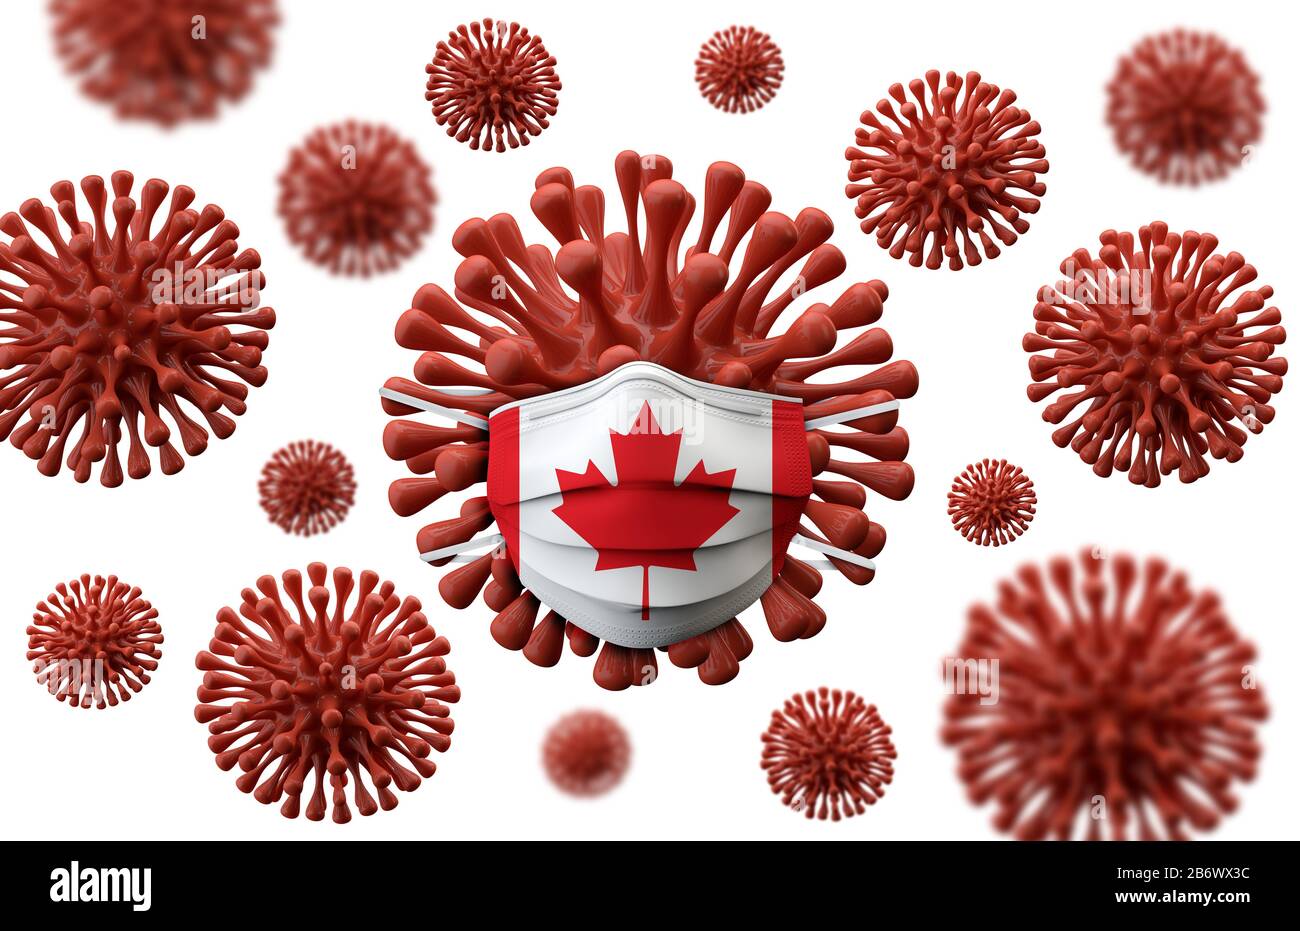 Masque de protection du drapeau du Canada sur une bactérie virale. Rendu tridimensionnel Banque D'Images